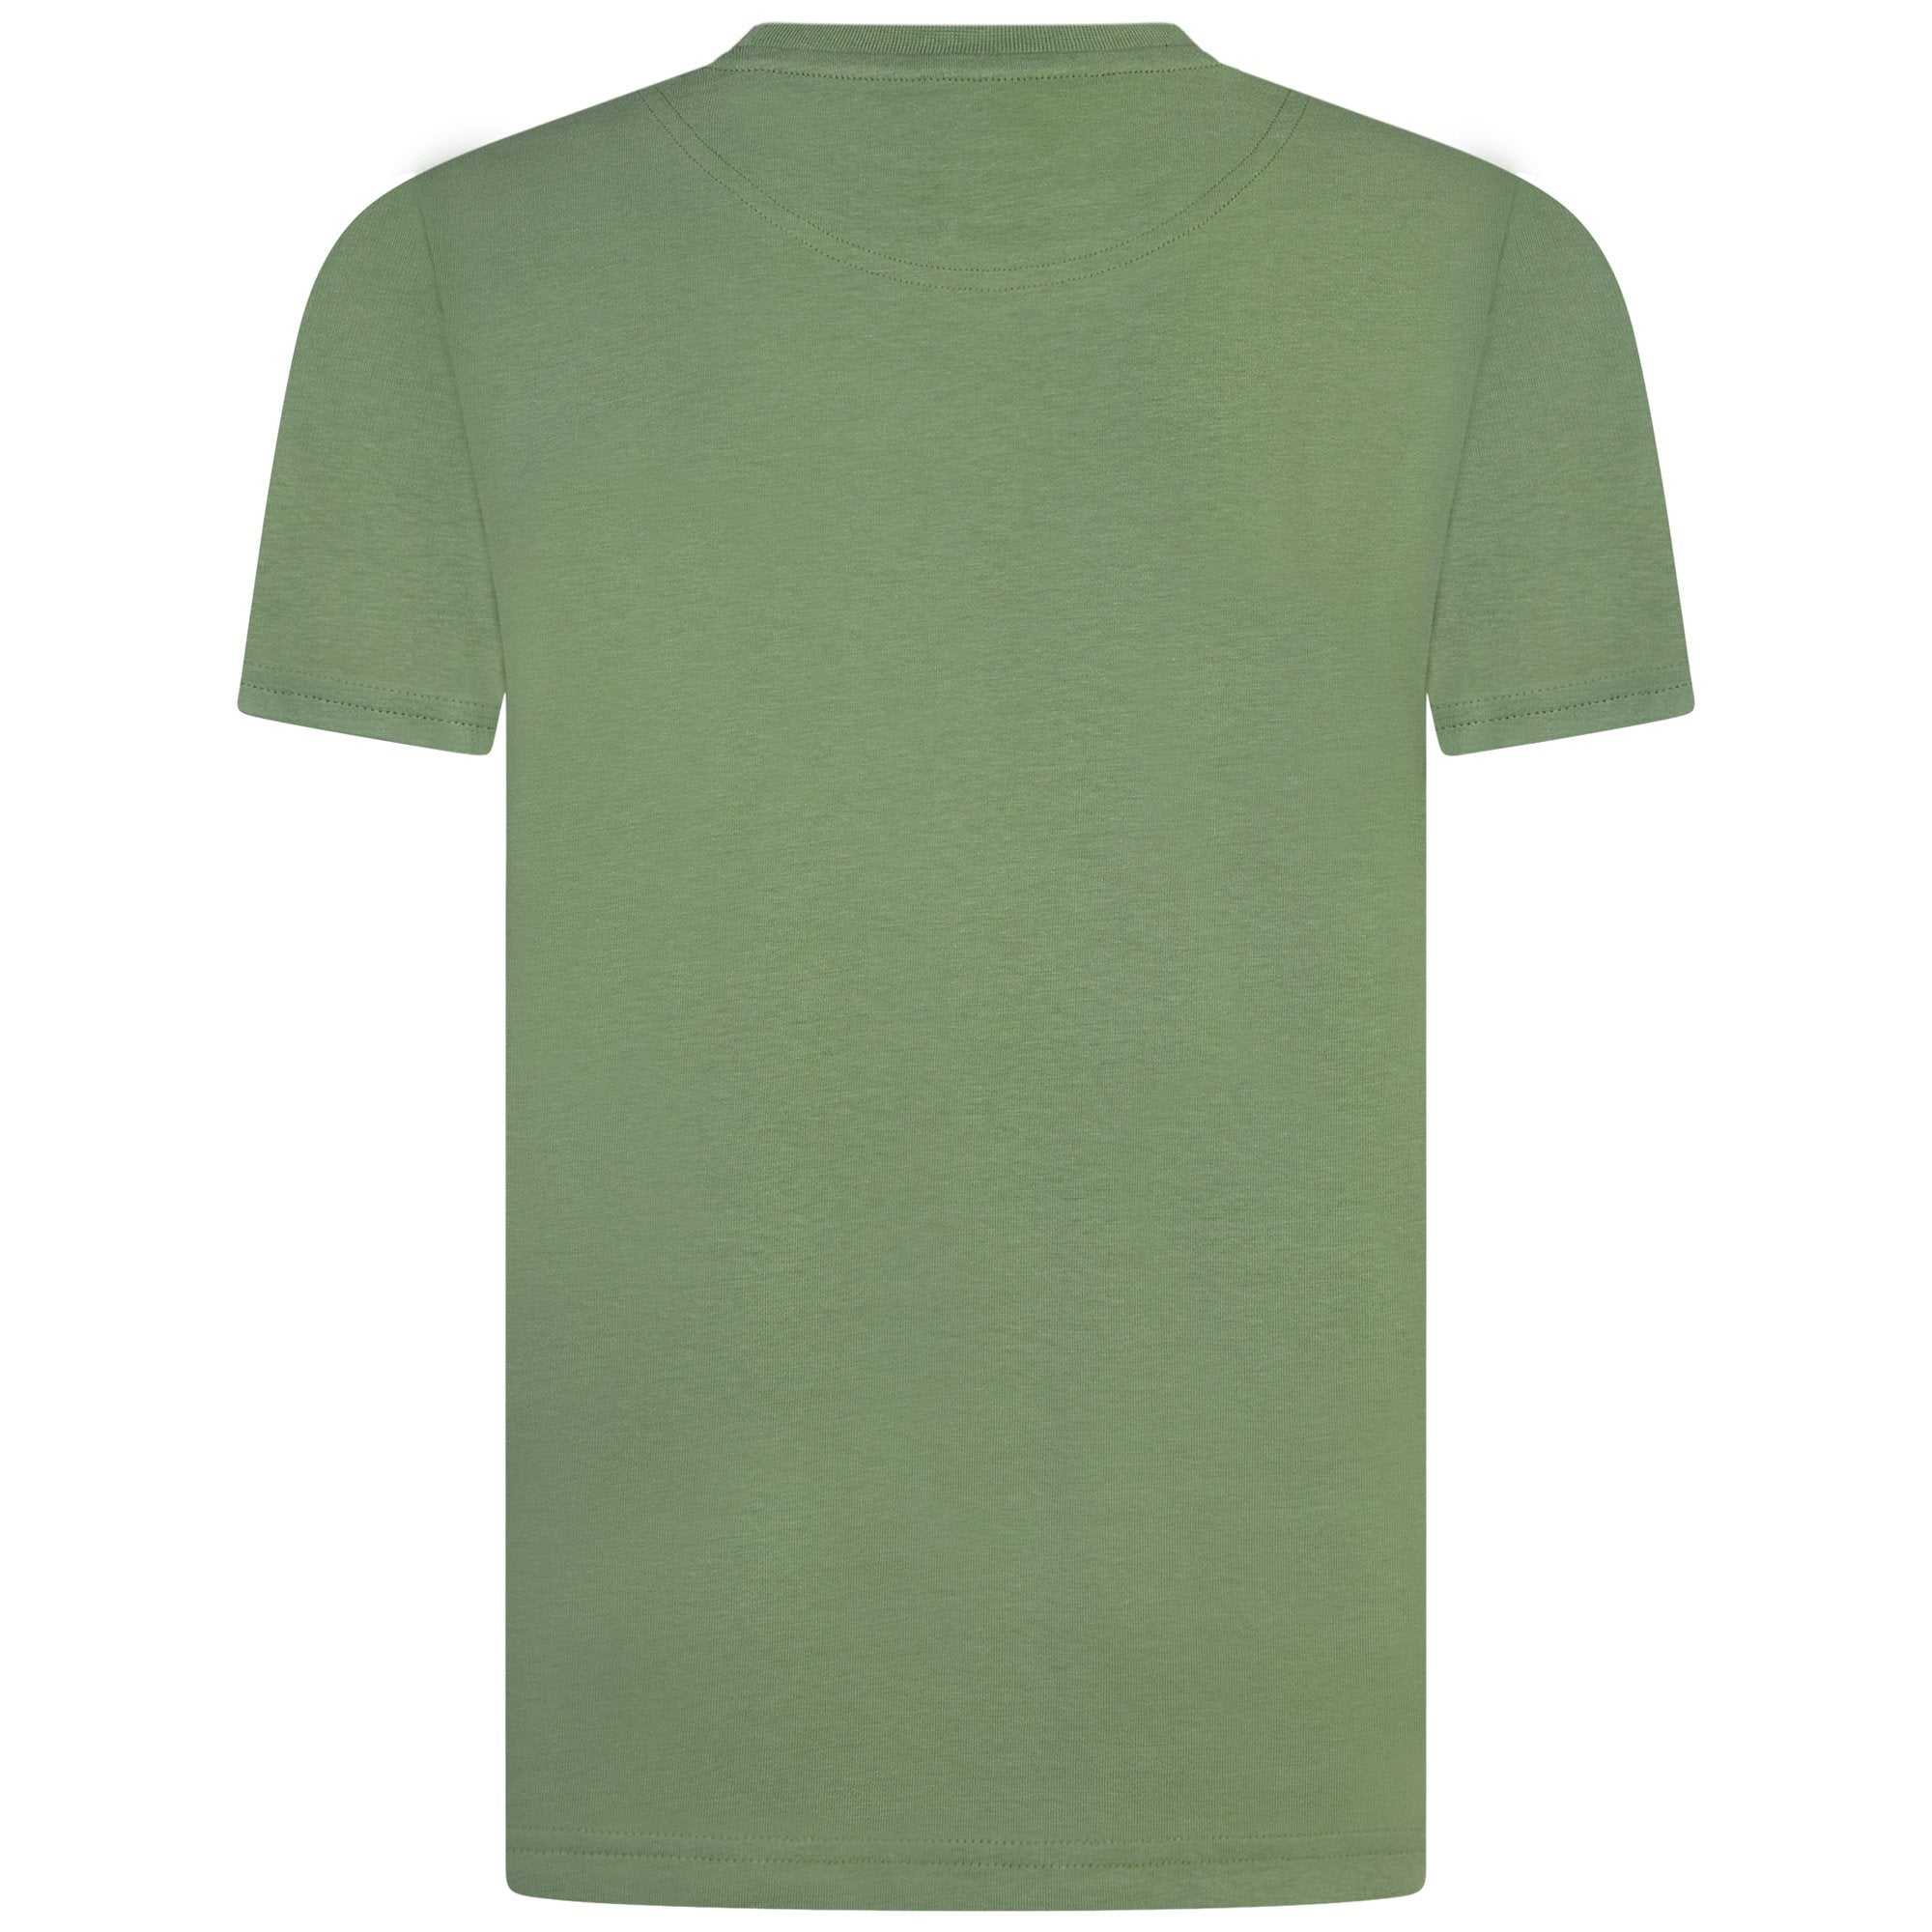 Jongens Classic T-Shirt Hedge Green van Lyle & Scott in de kleur Hedge Green in maat 170-176.